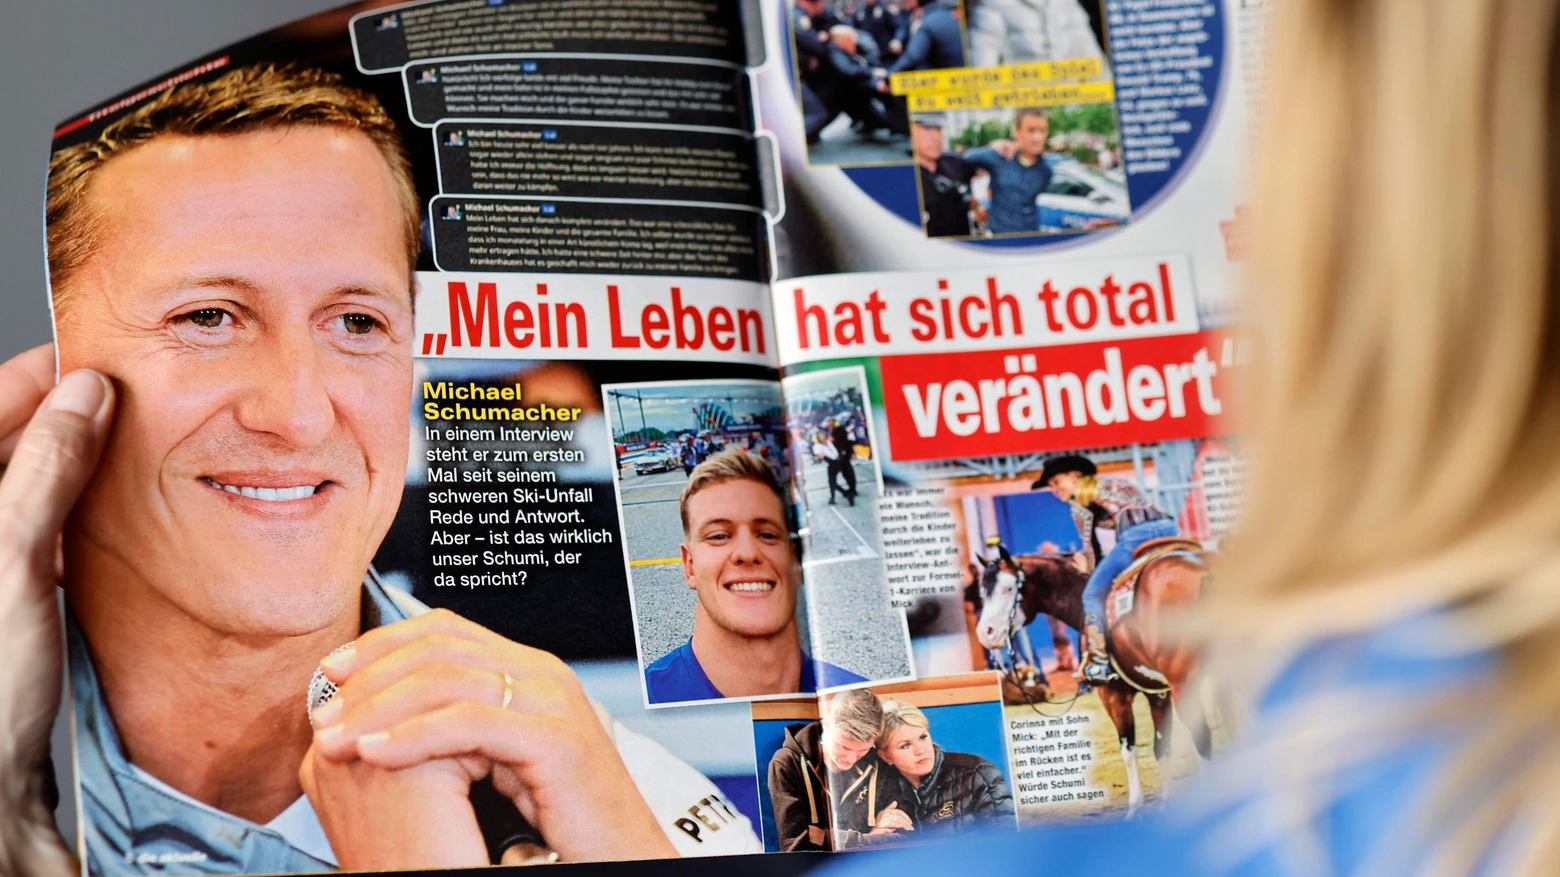 L'intervista falsa a Schumacher sul magazine tedesco Die Aktuelle